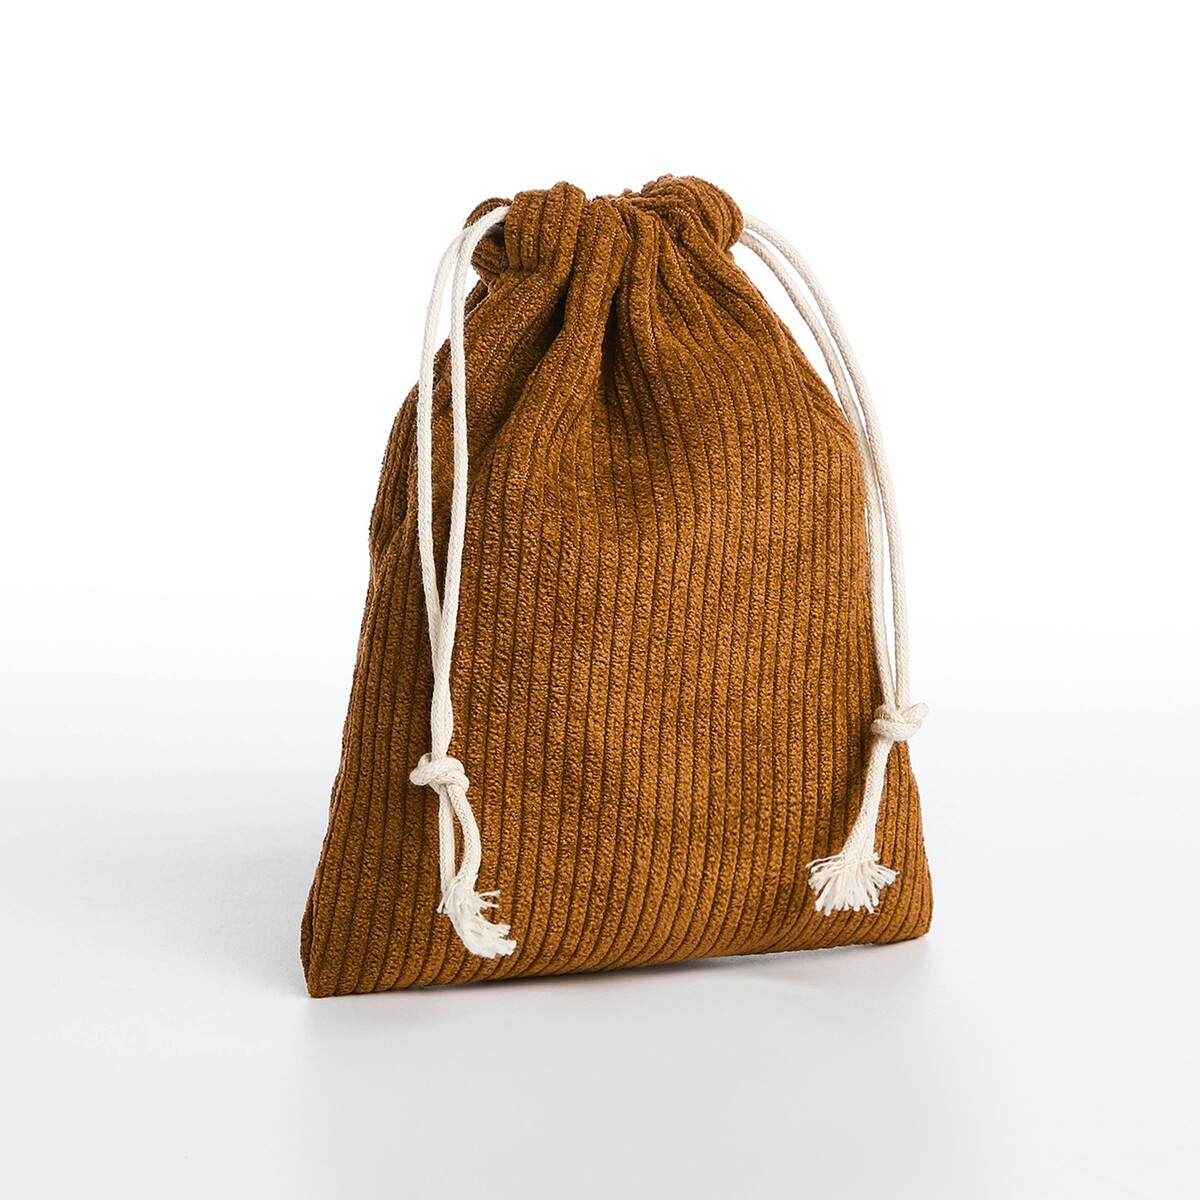 Косметичка - мешок с завязками, цвет коричневый сумка женская мешок 2 в 1 на кнопке косметичка светло коричневый